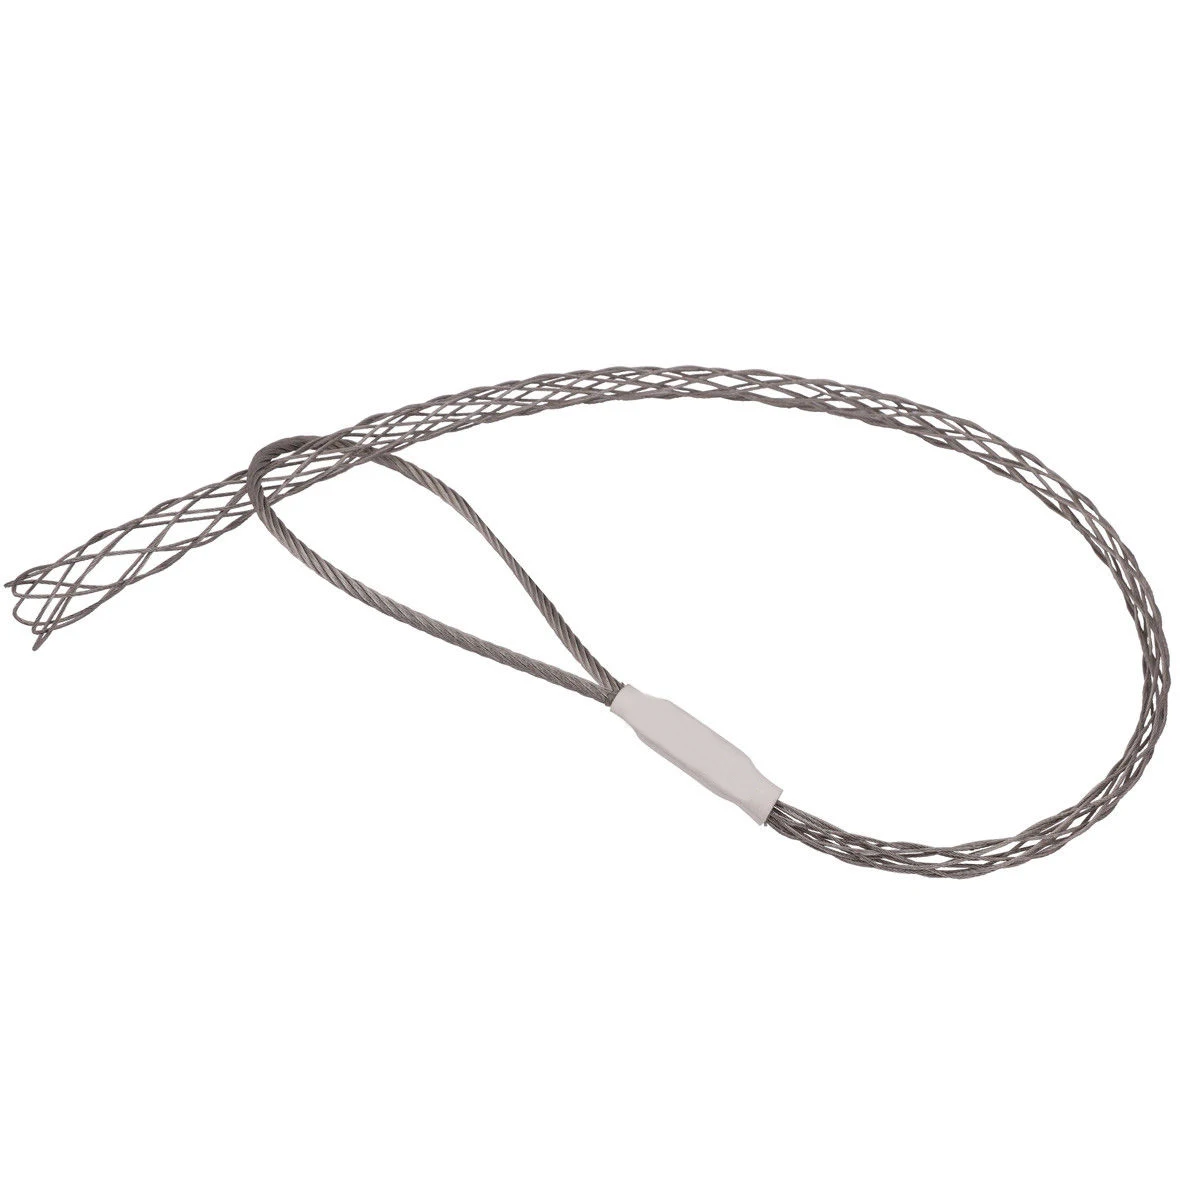 Оцинкованный металлический кабель носки противоскользящие трубы трубопровод кабель съемник провода ручки тяга чистая крышка аксессуар для 4-25 мм